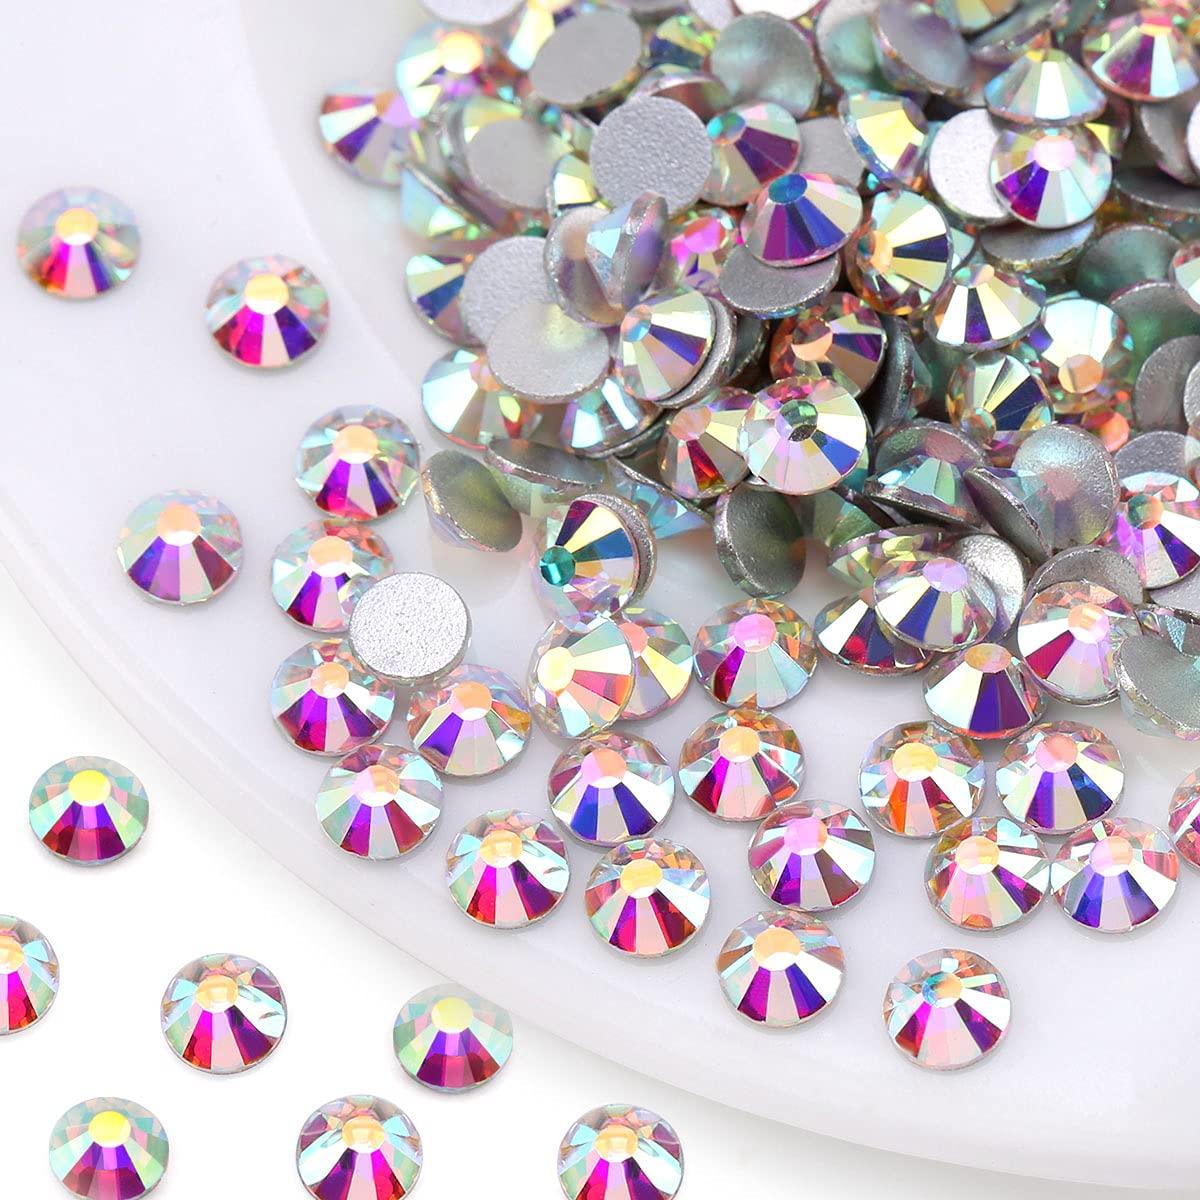 Novani Crystal Rhinestones, Flatback Loose Gemstones 1440pcs Glass